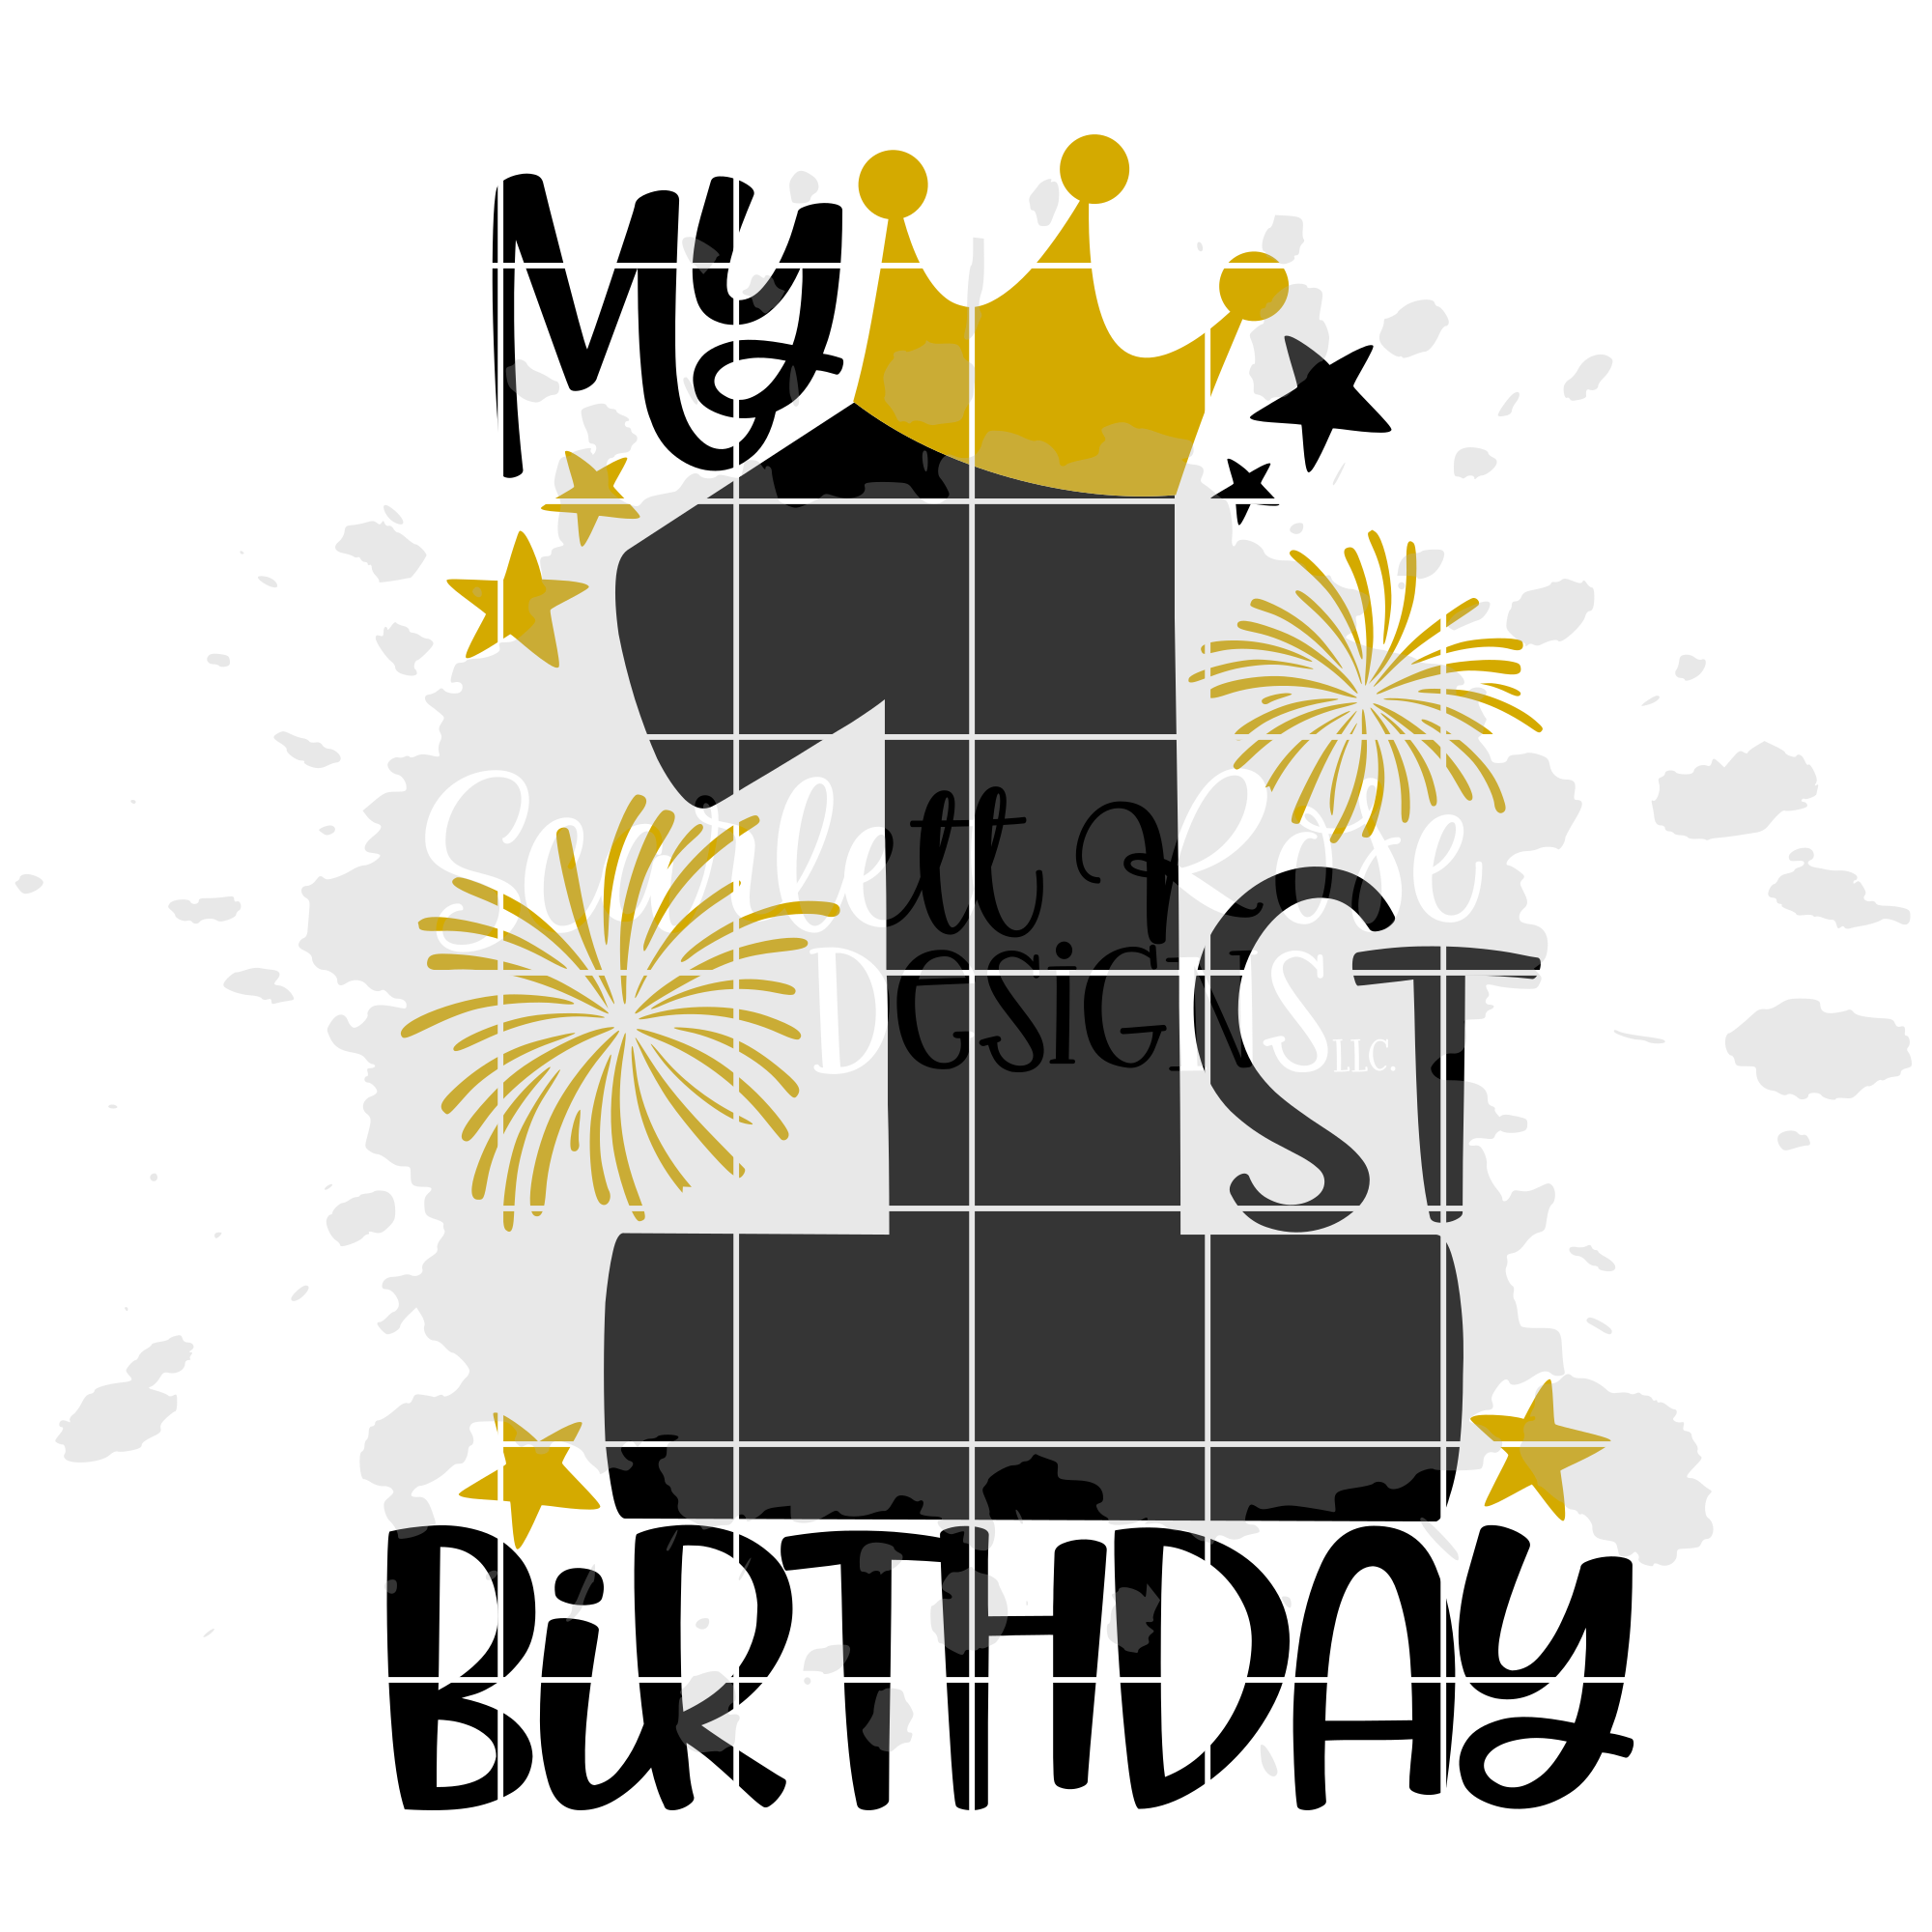 Download My 1st Birthday - Girl Birthday SVG cut file - Scarlett Rose Designs